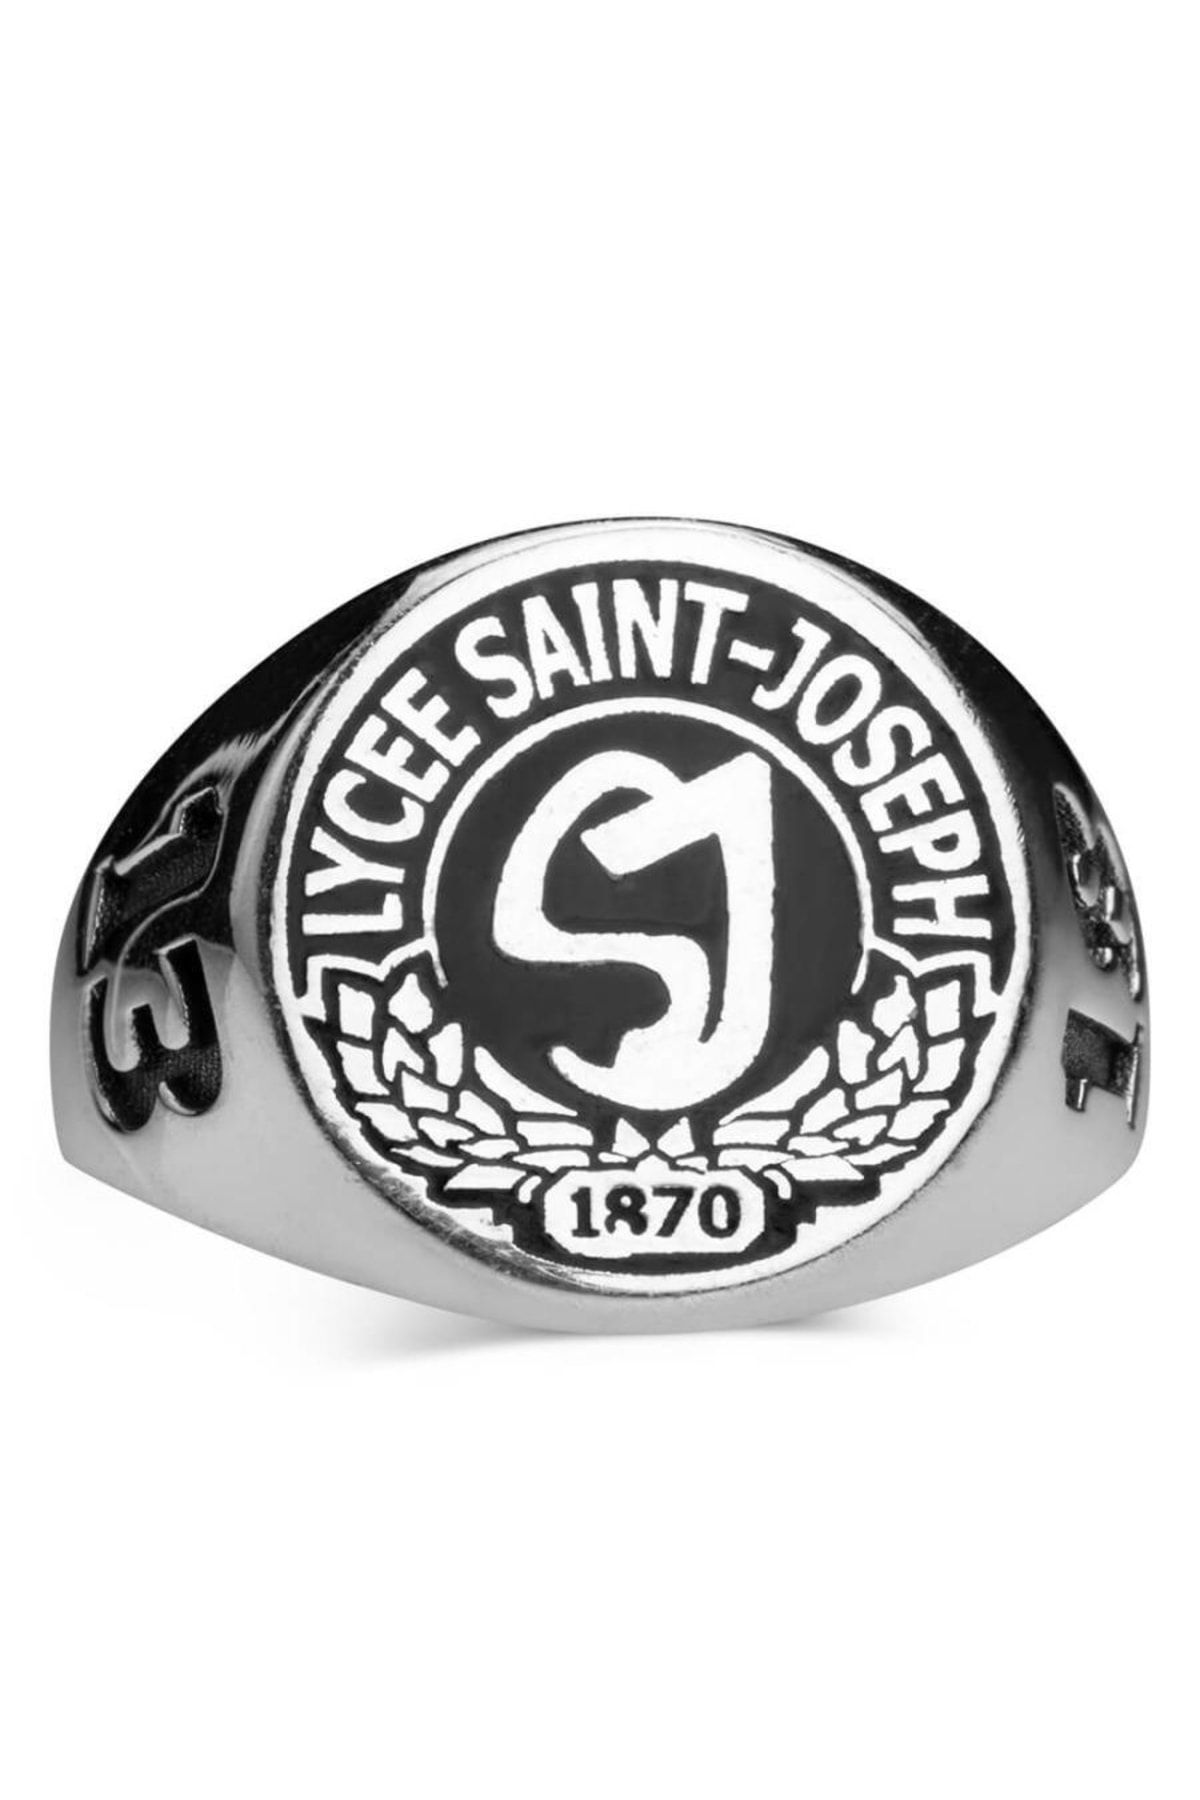 Anı Yüzük Saint-joseph Lisesi 2018 Kadın Mezuniyet Yüzüğü